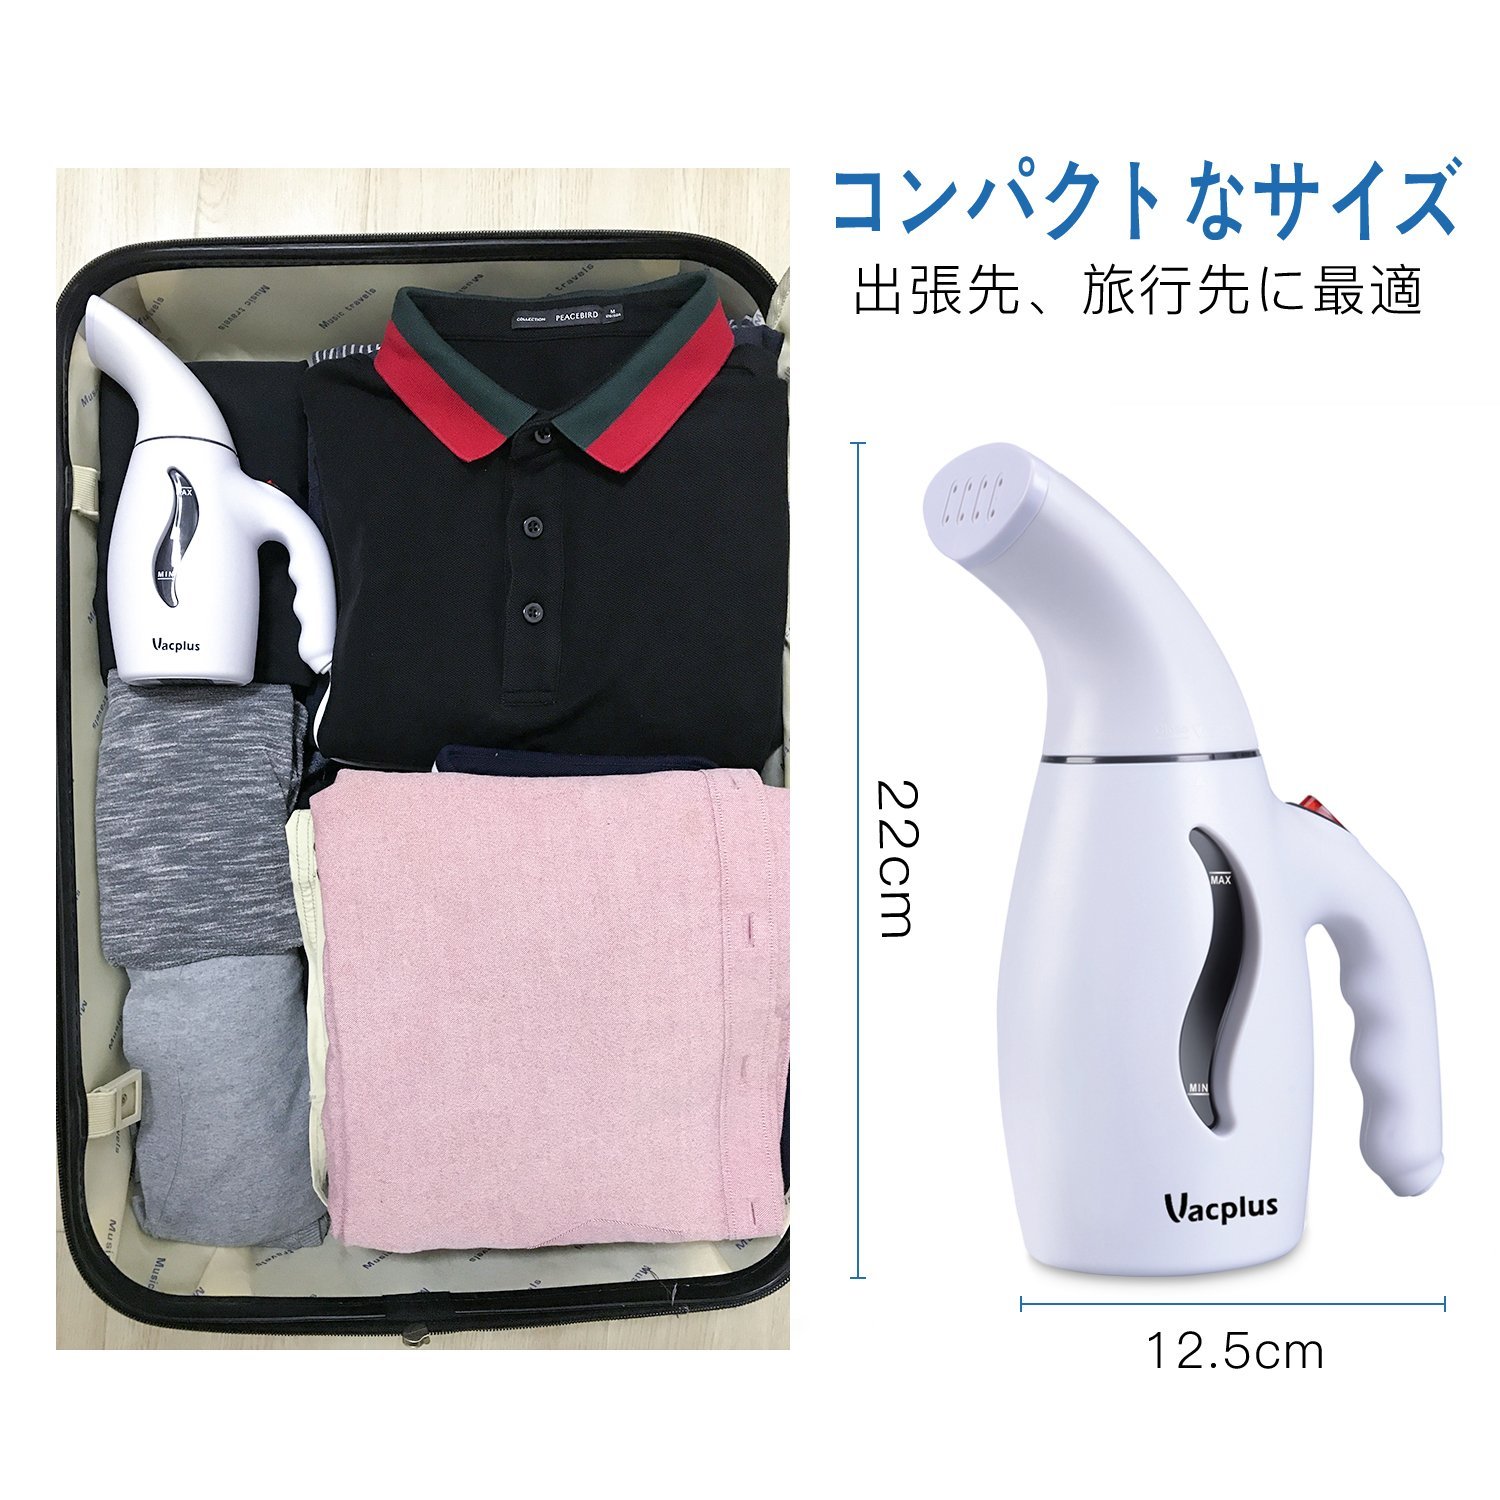 【Vacplus】　　衣類アイロンスチーマー